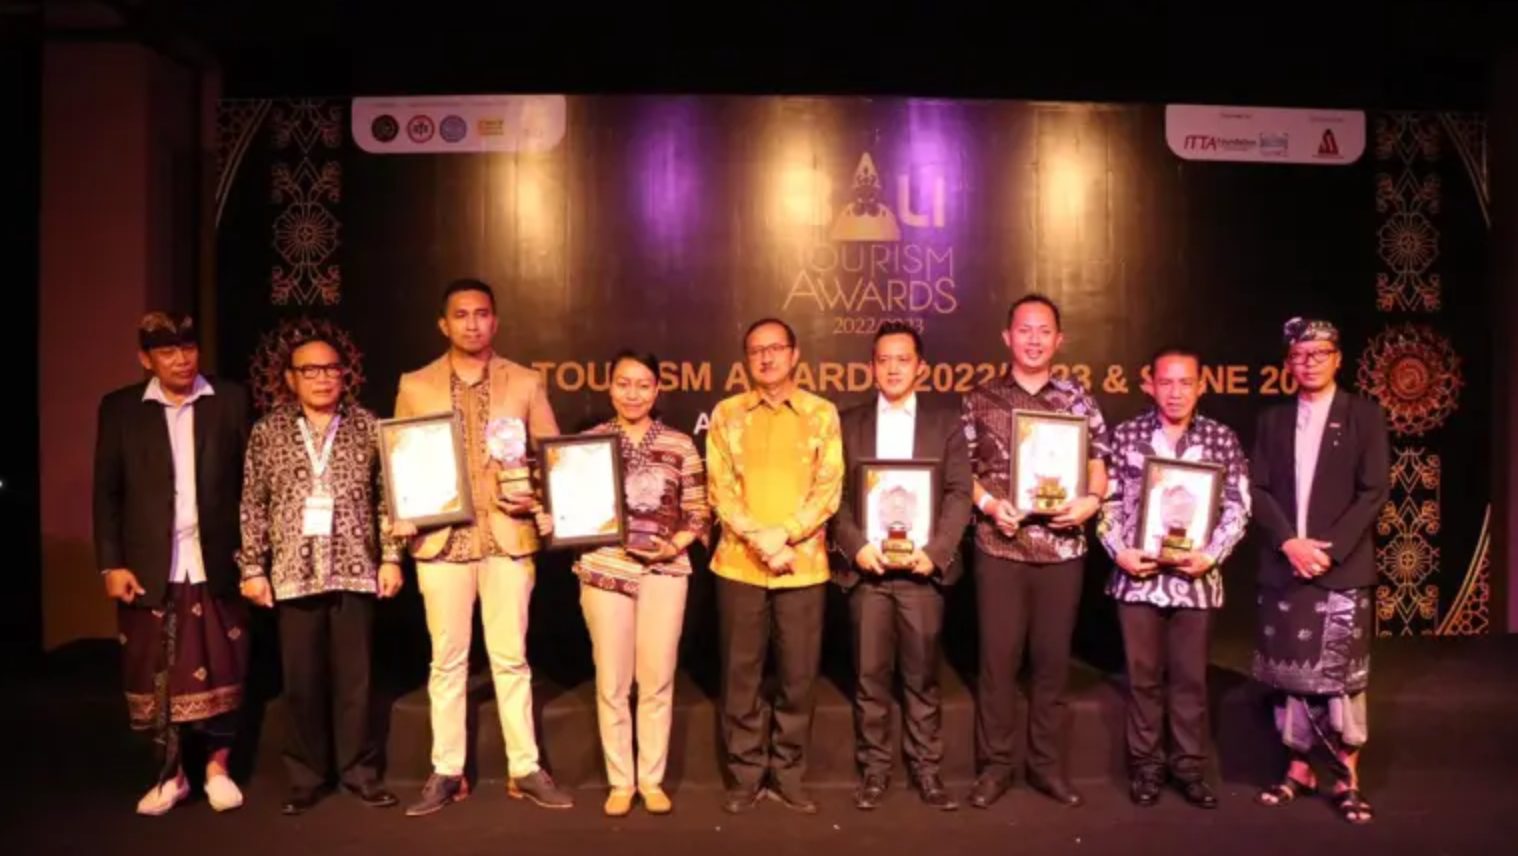 Bali Tourism Awards 2022 for Plataran Canggu and Plataran Ubud